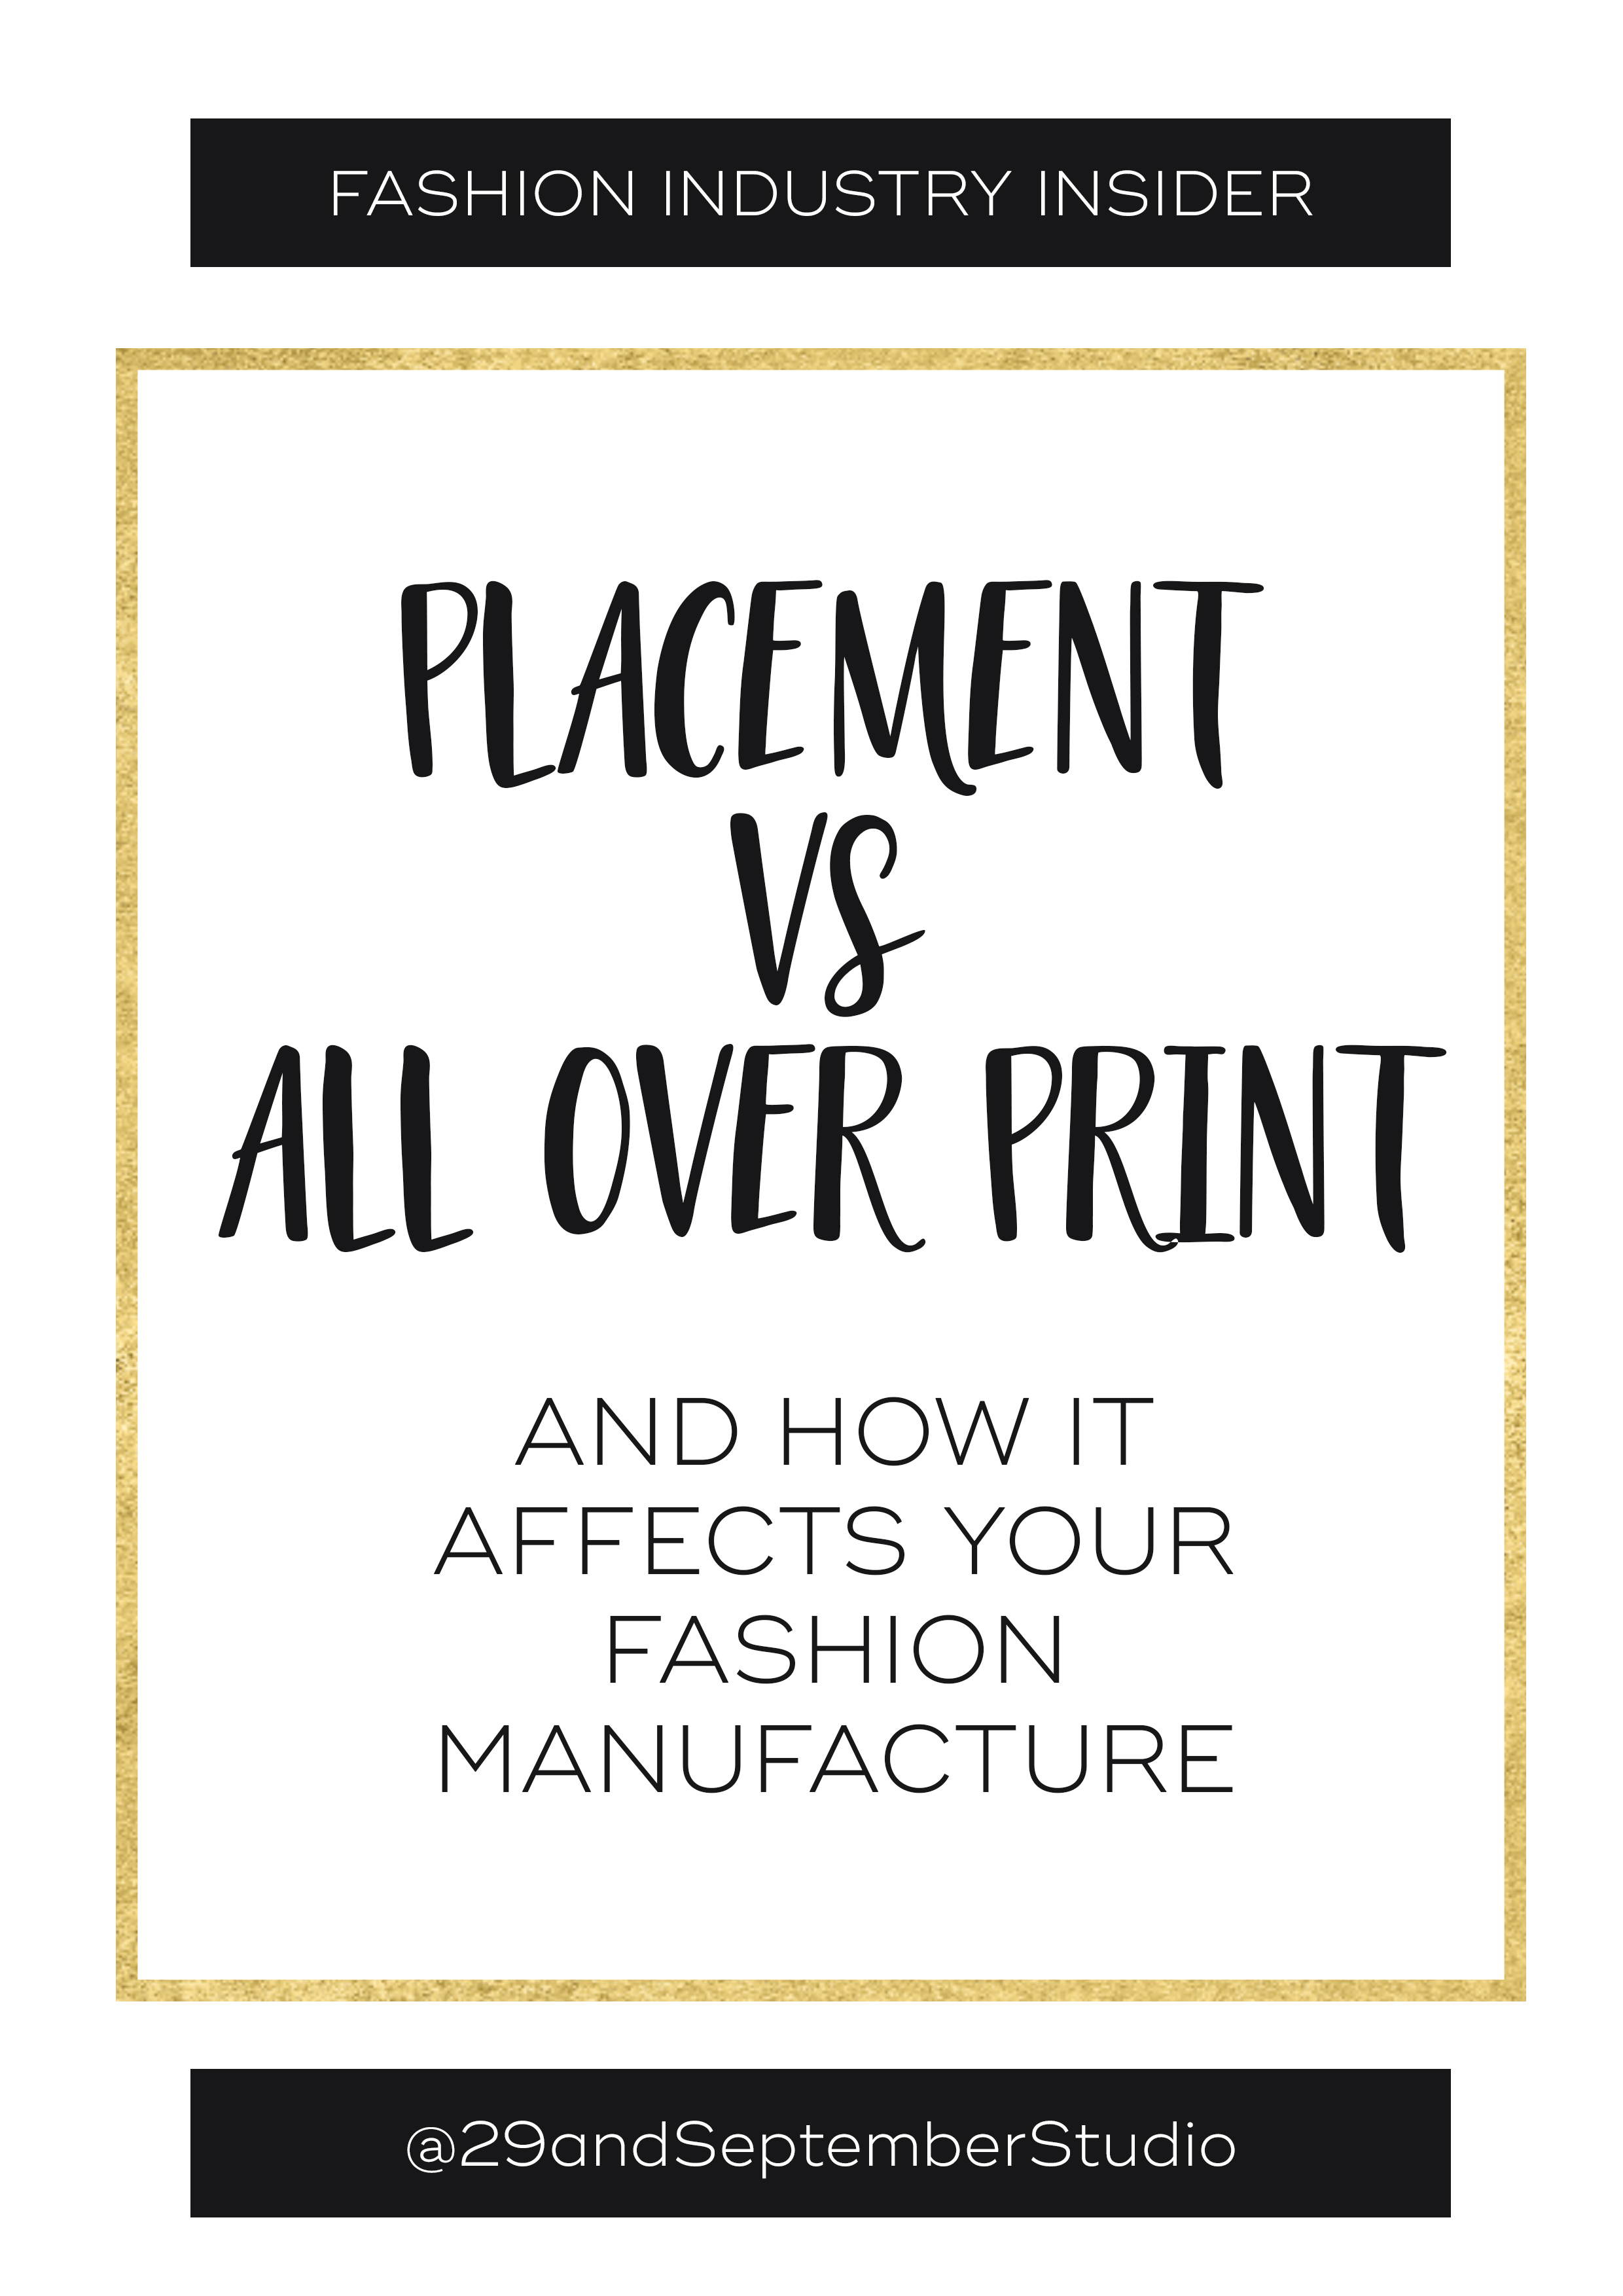 https://images.squarespace-cdn.com/content/v1/581127cb5016e16c20de8787/1531390410882-OB2SXN8VE8S6V46JR40Z/Placement+Prints+vs+All+Over+Prints+and+How+They+Affect+Your+Fashion+Manufacture+%7C+Placement+Prints+Textiles+%7C+Print+Definition+%7C+Textile+Design